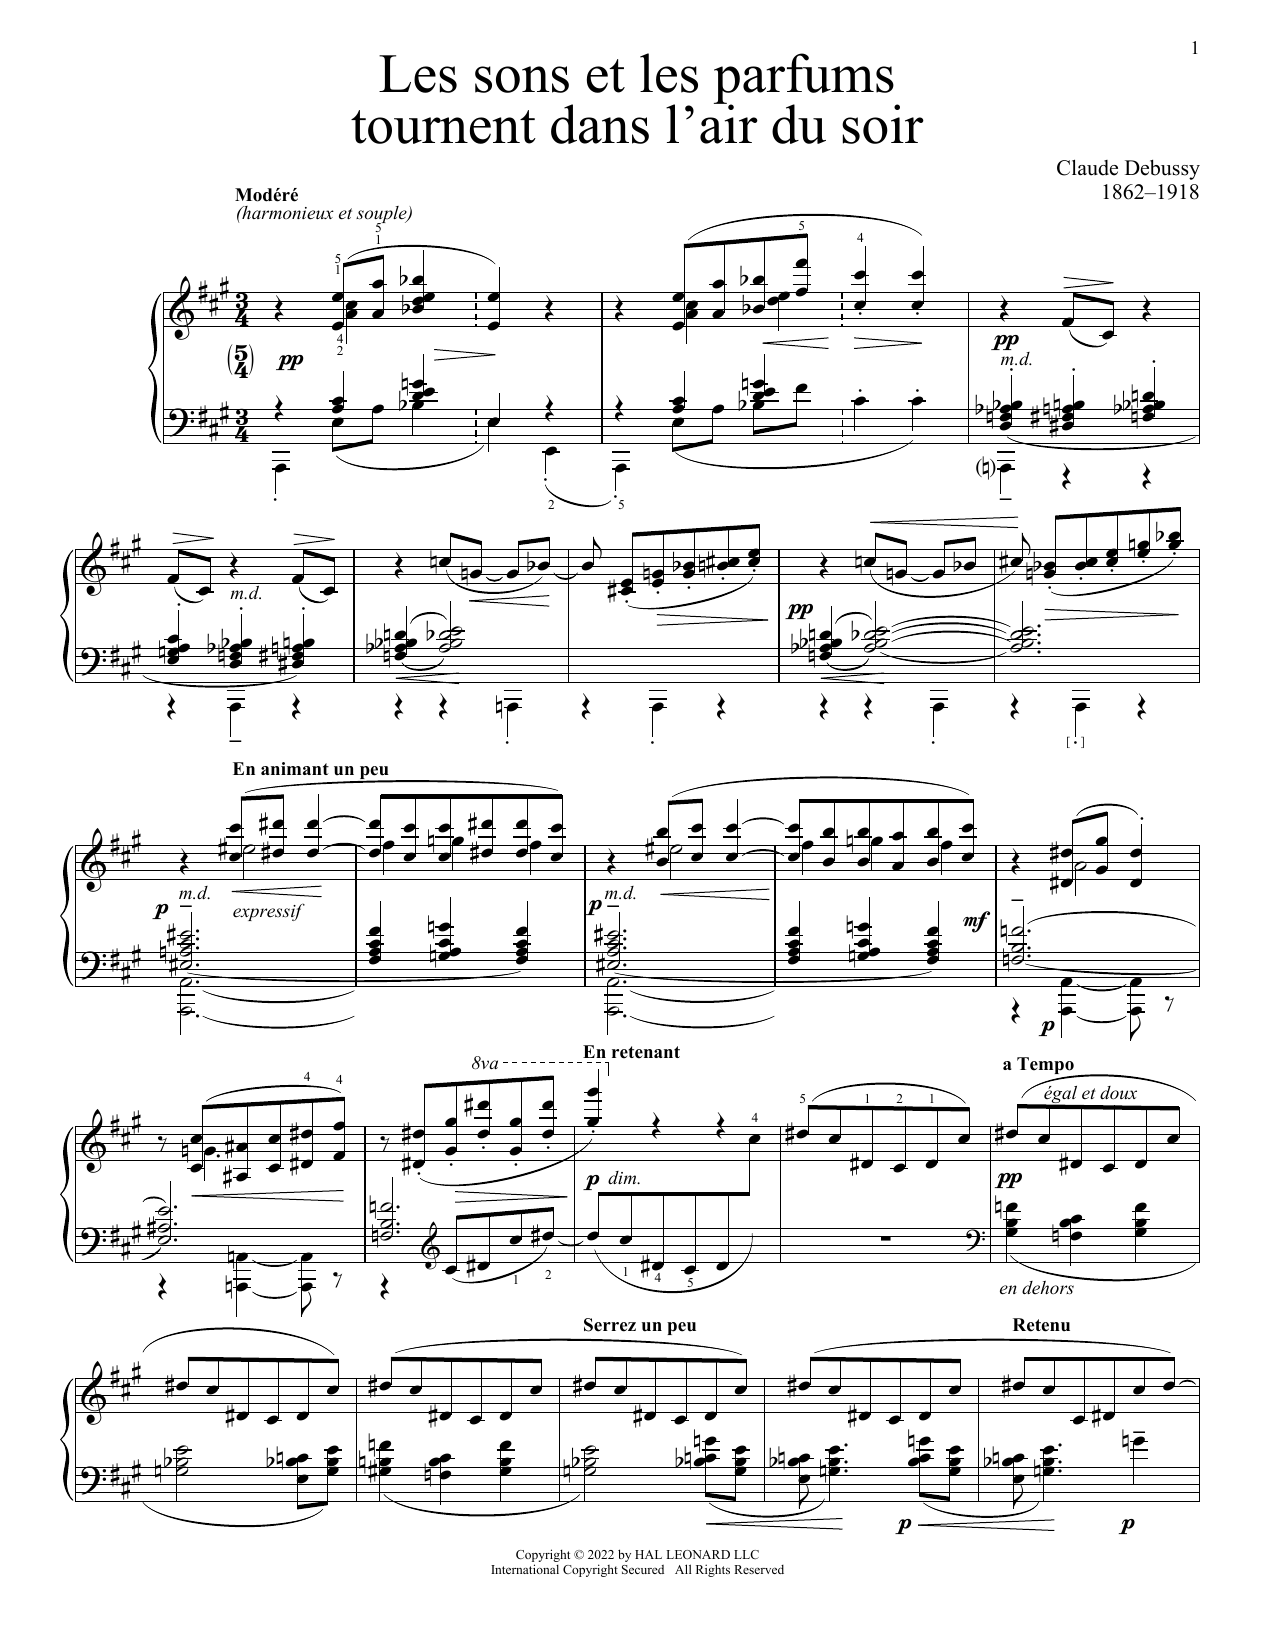 Claude Debussy Les Sons Et Les Parfums Tournent Dans L'Air Du Soir Sheet Music Notes & Chords for Piano Solo - Download or Print PDF